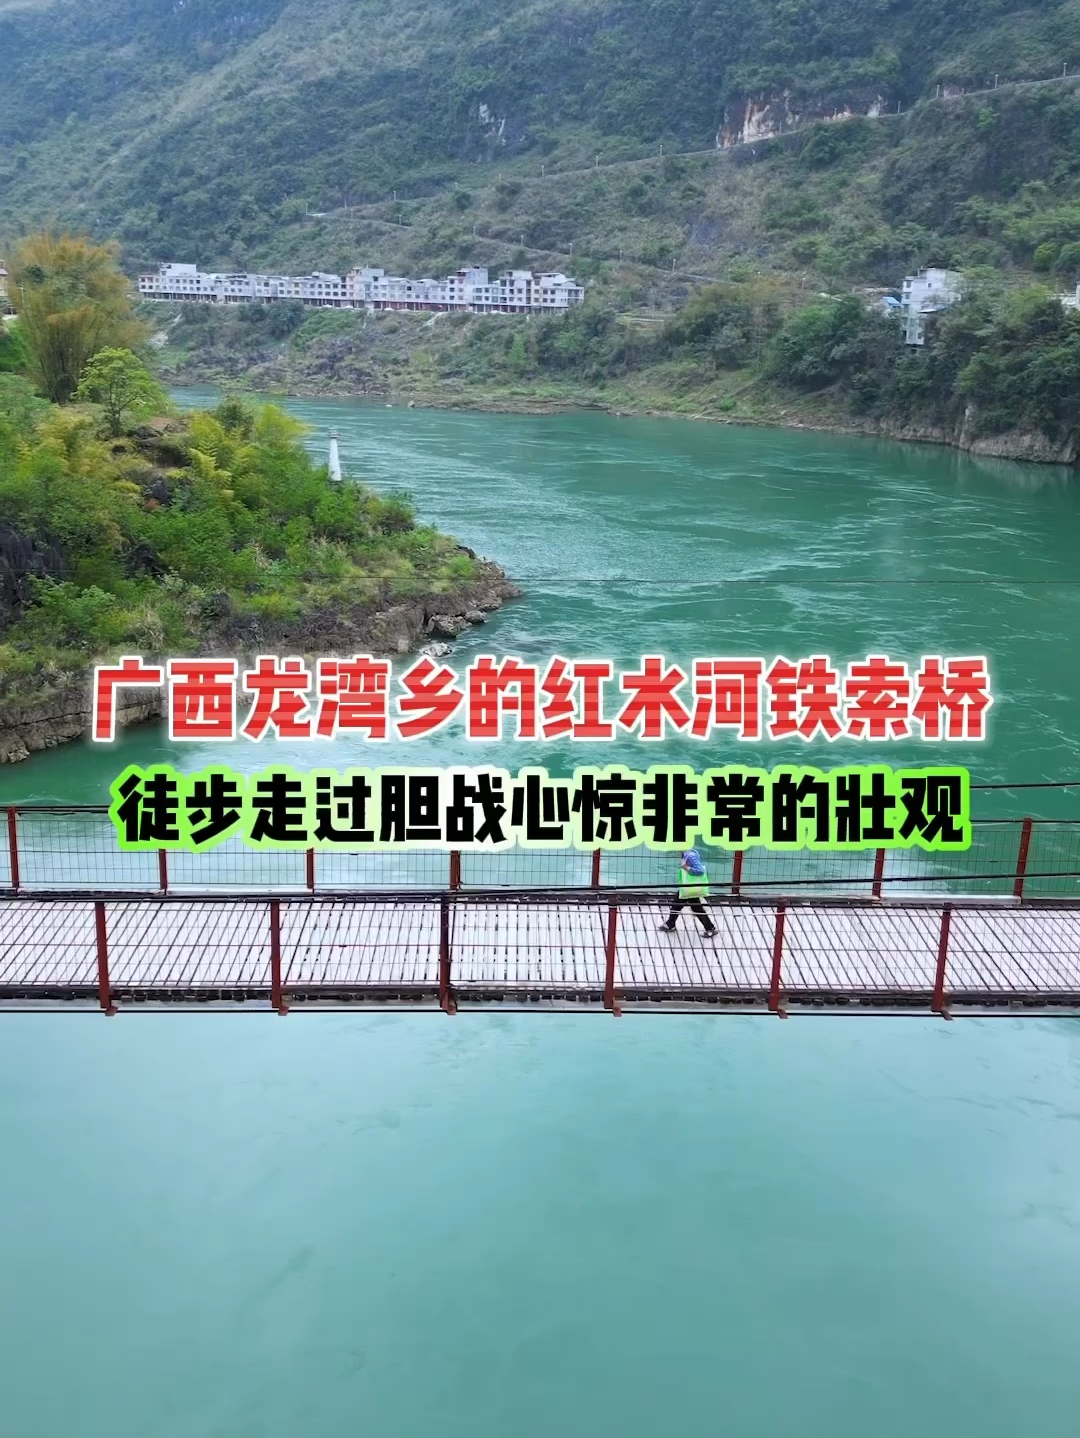 广西龙湾乡的红水河铁索桥，桥长200多米，徒步走过胆战心惊，非常的壮观你来过吗？